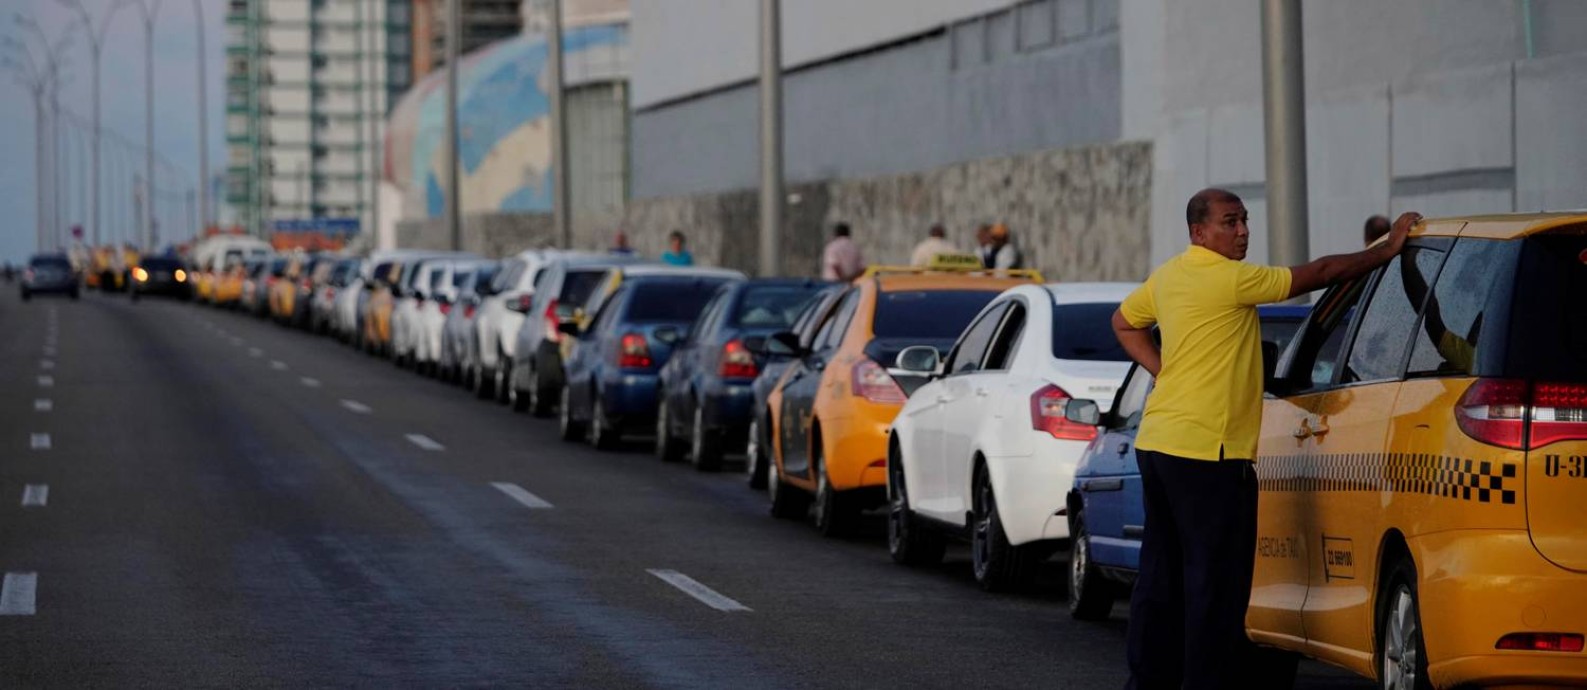 Dezenas de carros fazem fila em frente a um posto de gasolina em Havana Foto: ALEXANDRE MENEGHINI / REUTERS